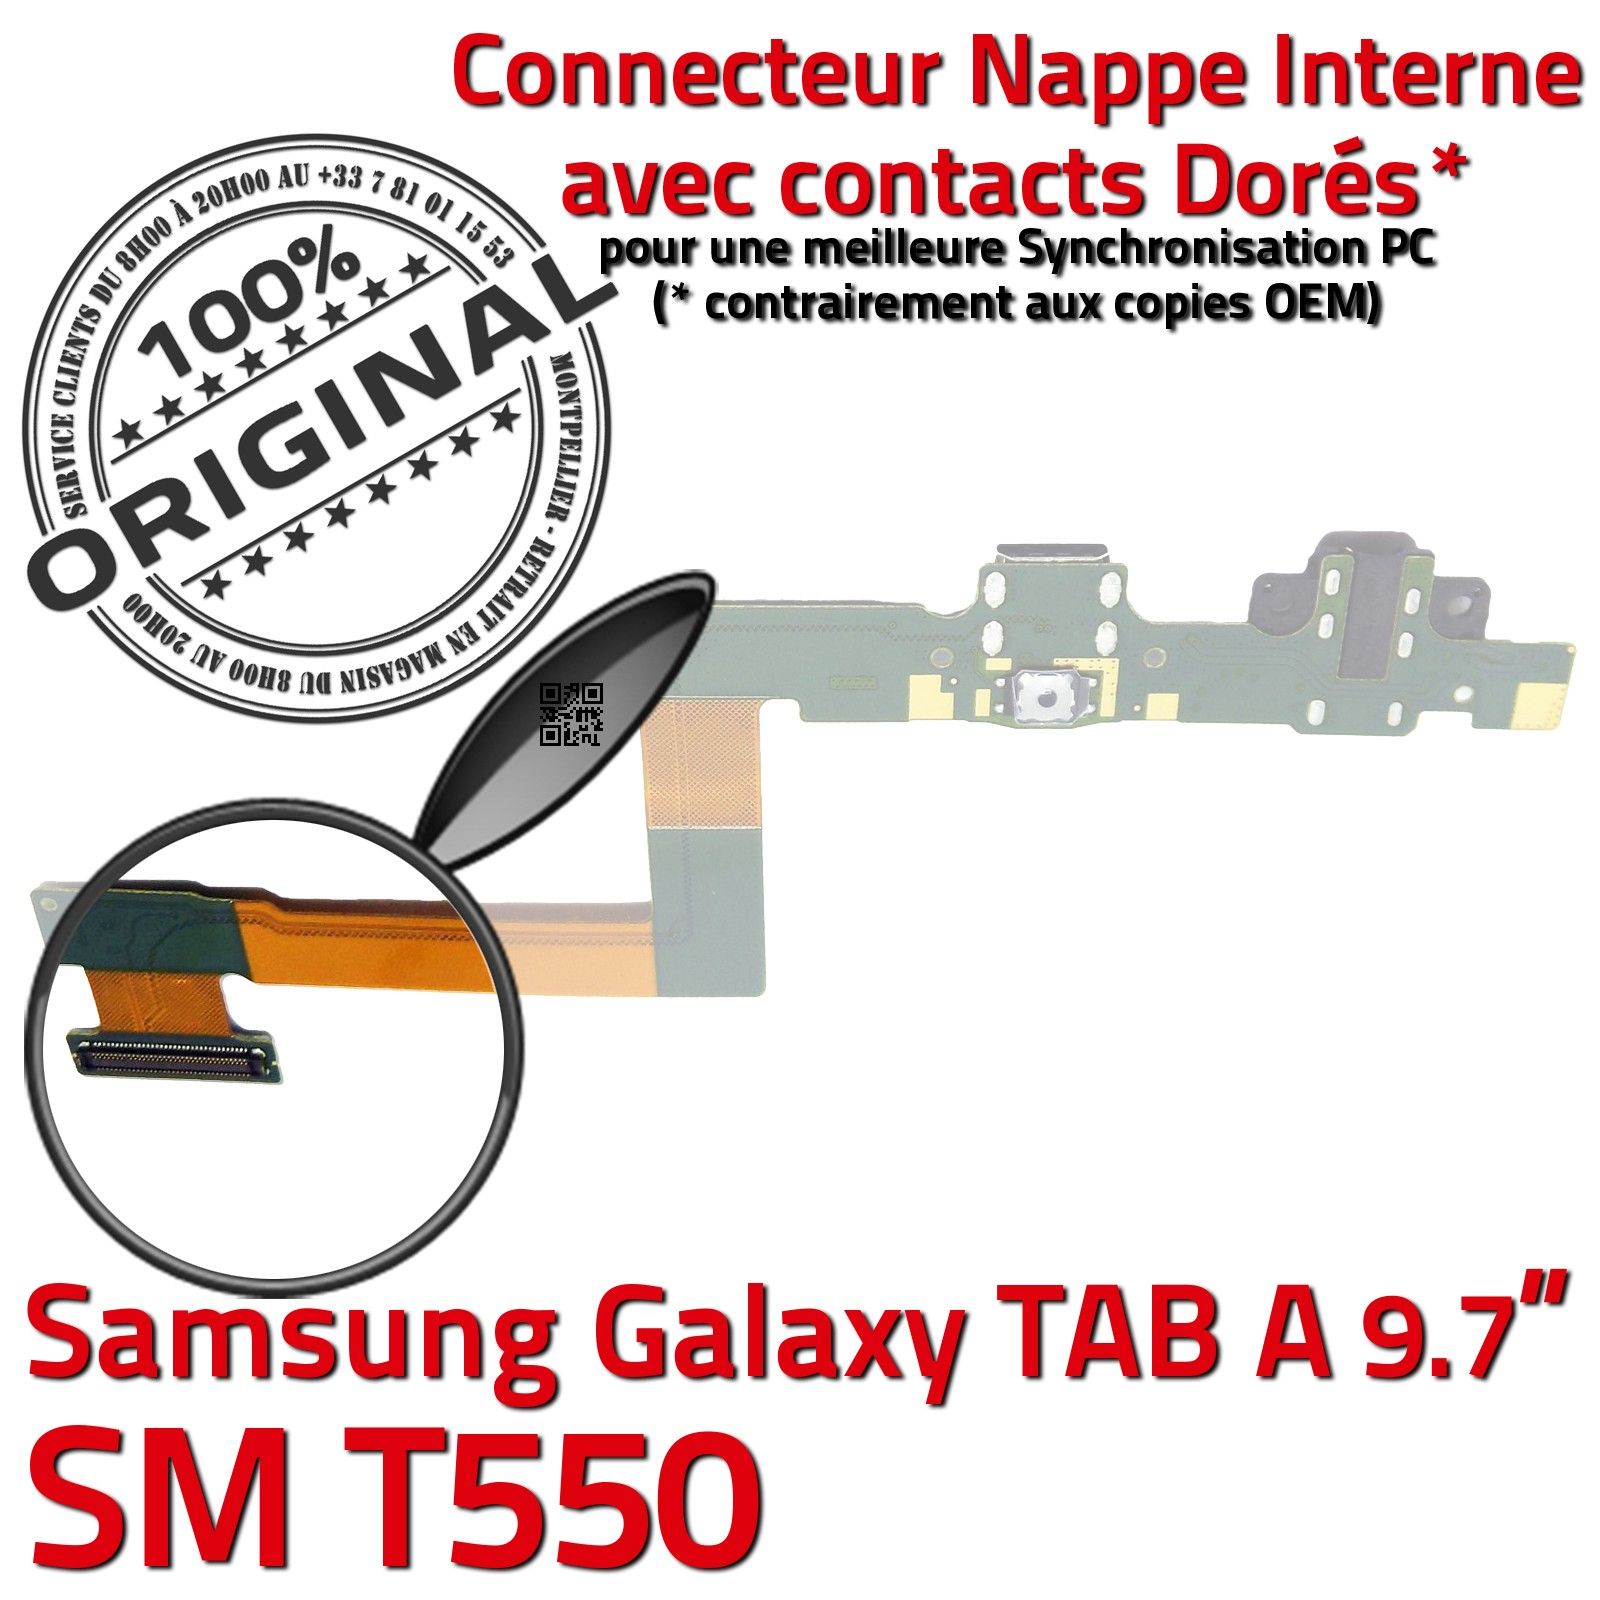 ORIGINAL Samsung Galaxy TAB A SM T550 Connecteur de Charge Chargeur Nappe Flex OFFICIELLE Réparation Haut Parleur Bouton HOME